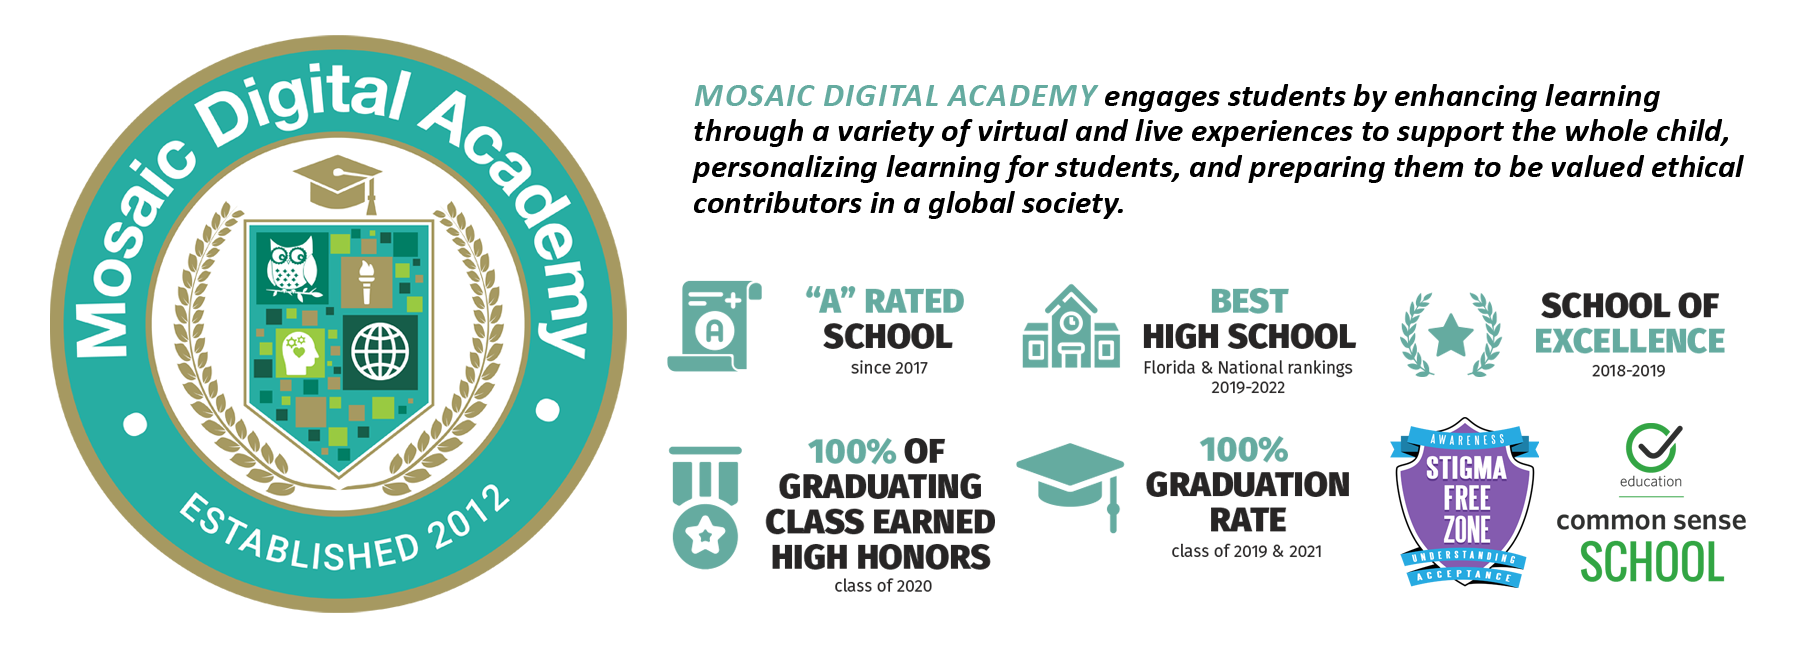 Mosaic Digital Academy